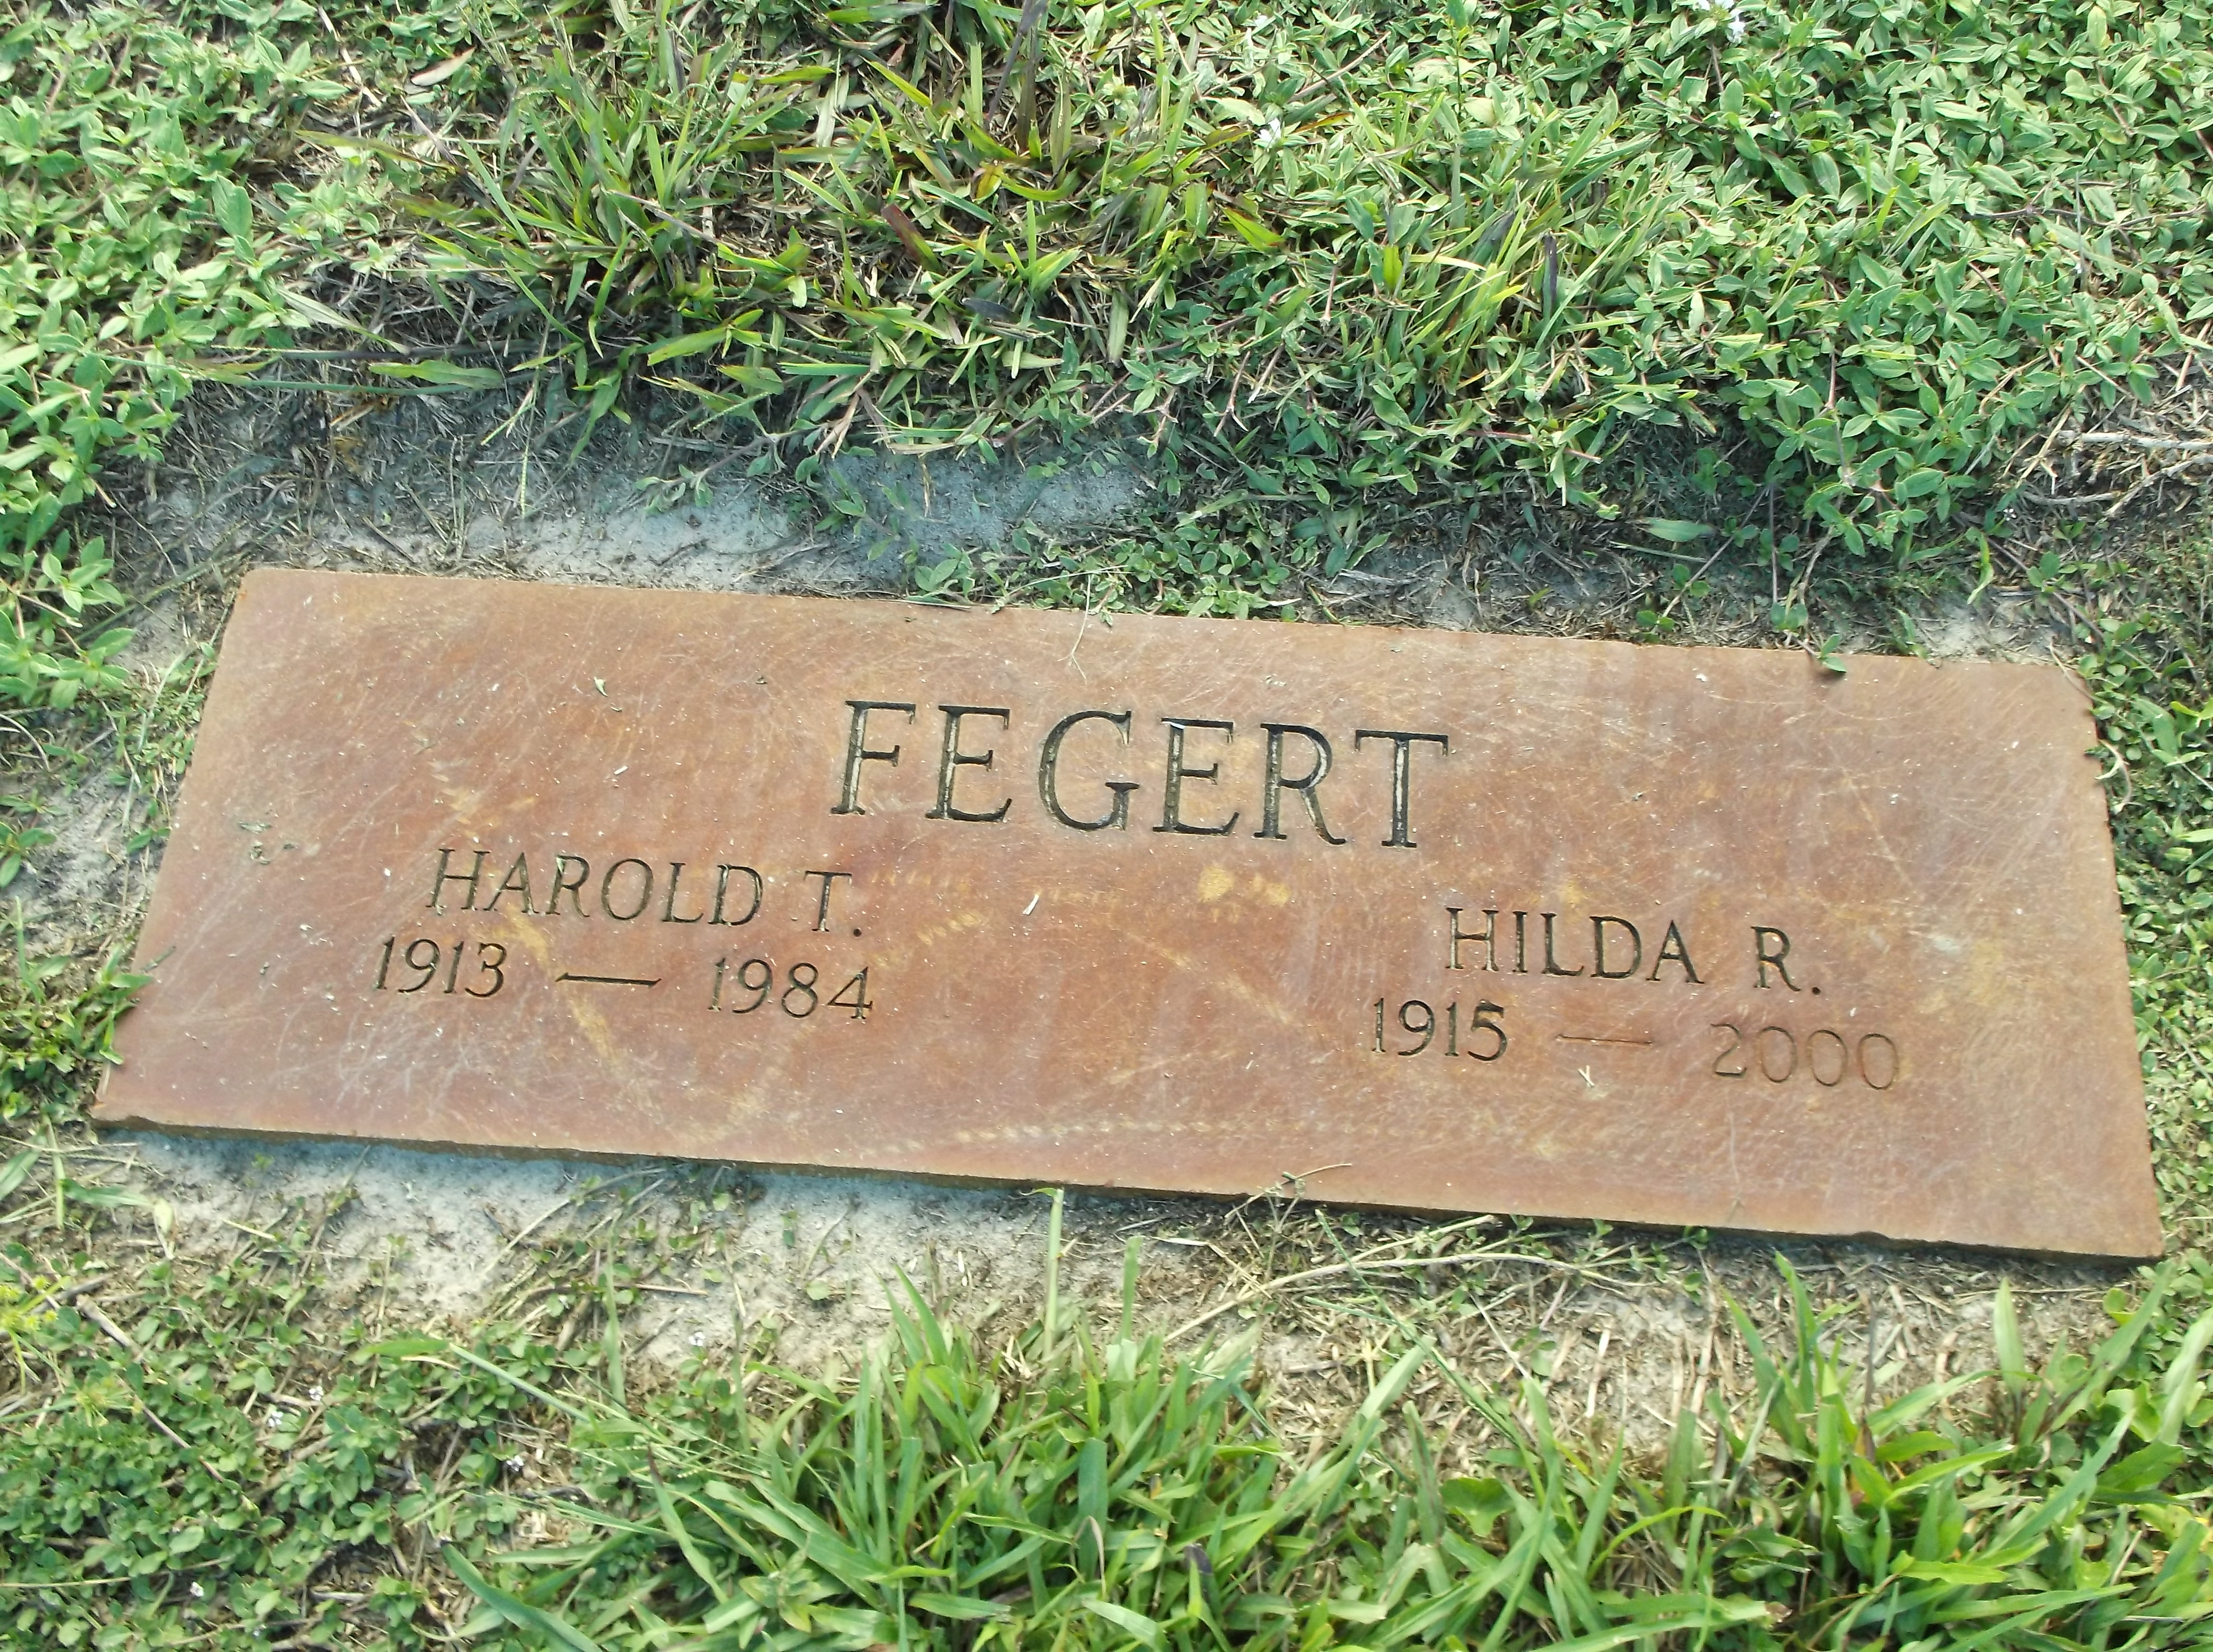 Harold T Fegert